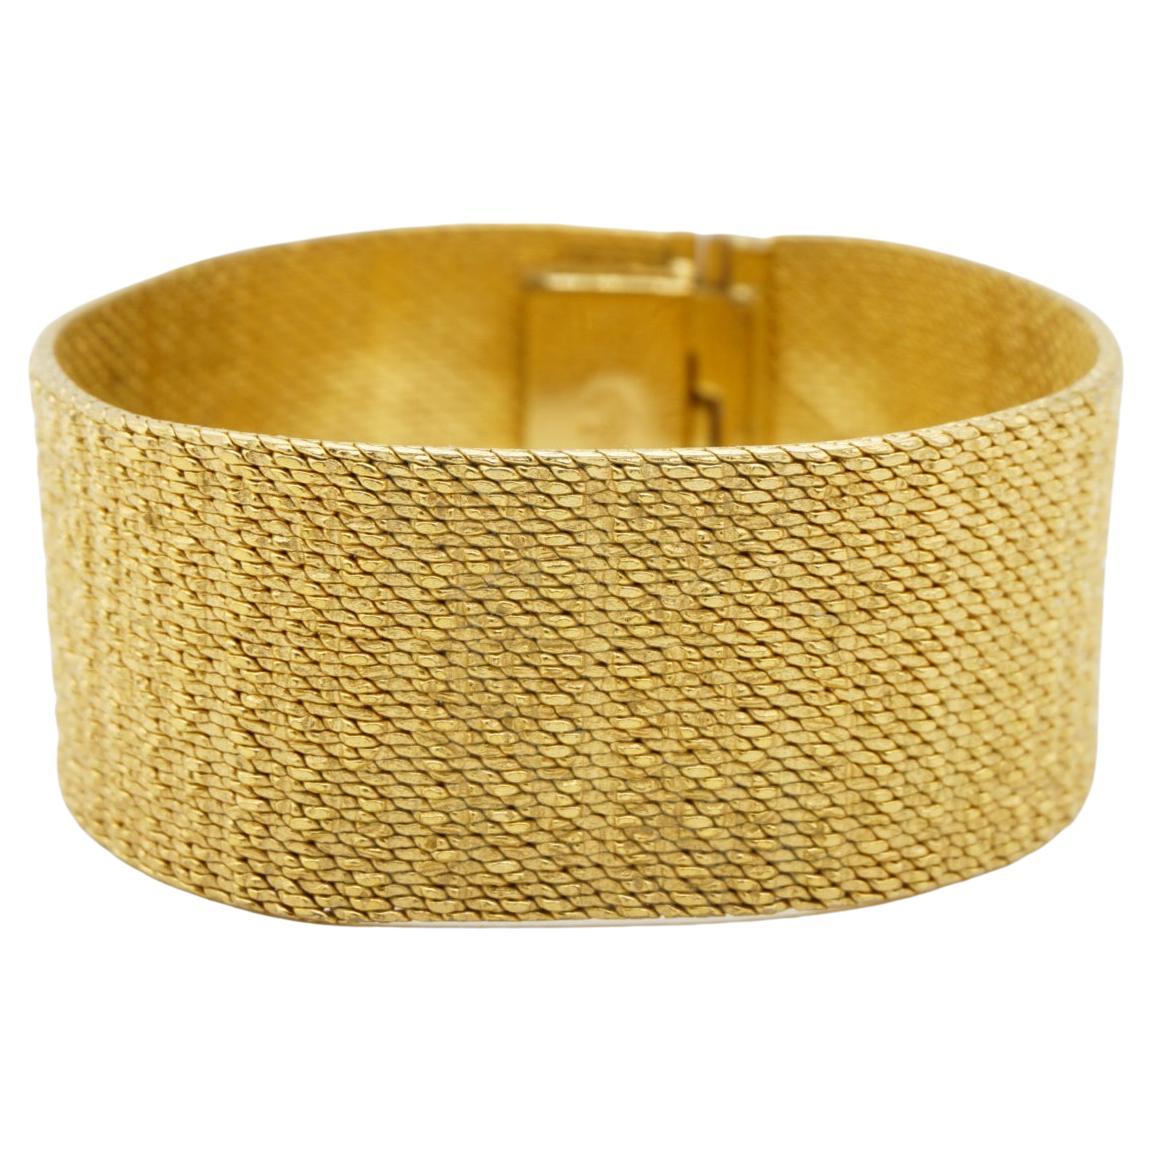 Christian Dior GROSSE 1964 Textured Mesh Woven Modernist Cuff Gold Bracelet